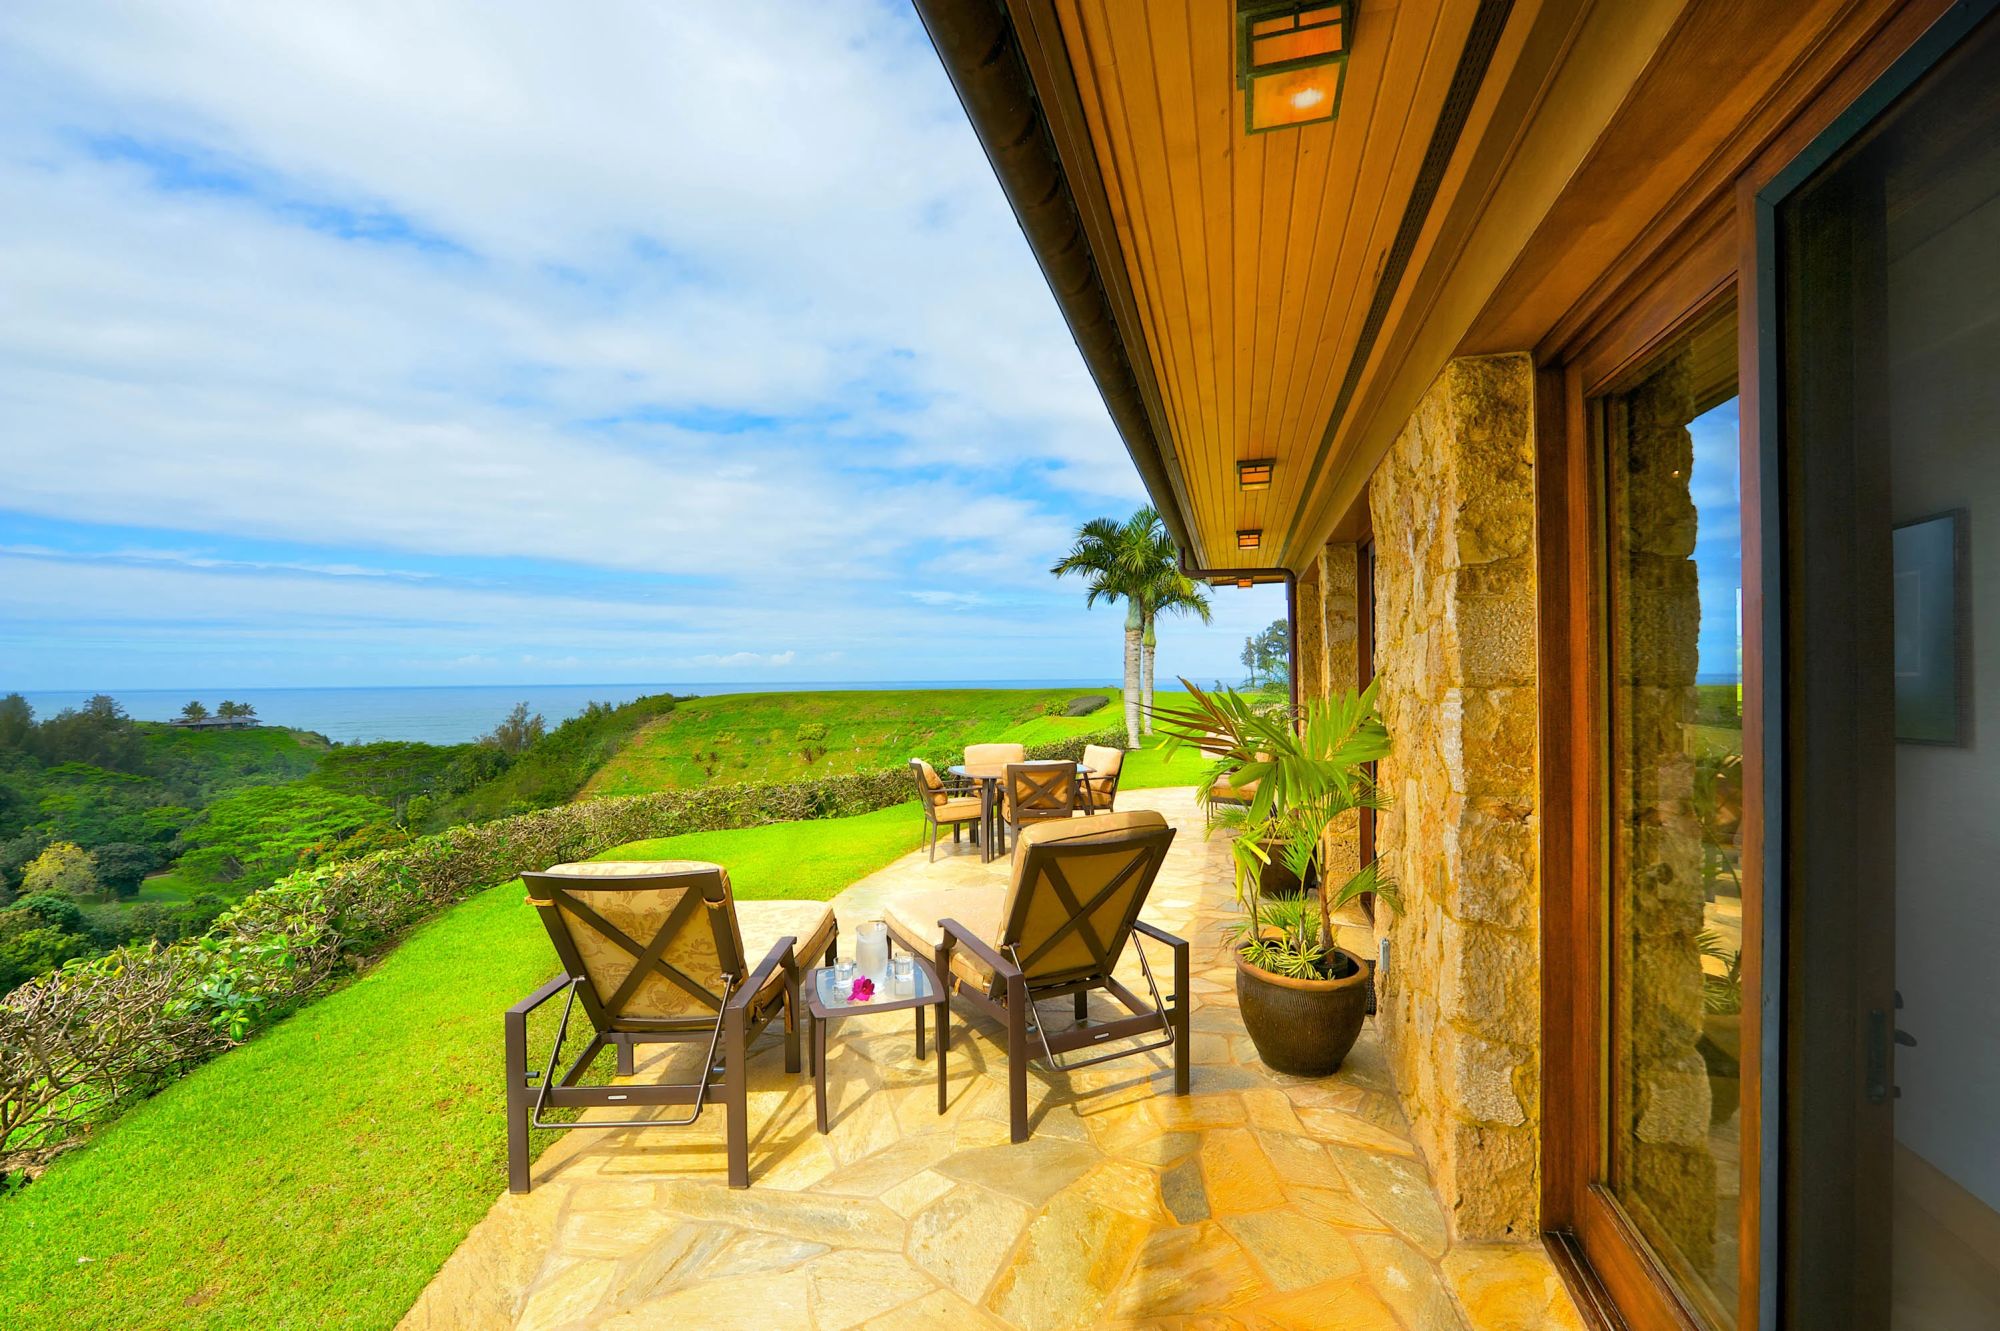 À vendre domaine vue spectaculaire sur l'océan Pacifique | Hawaï